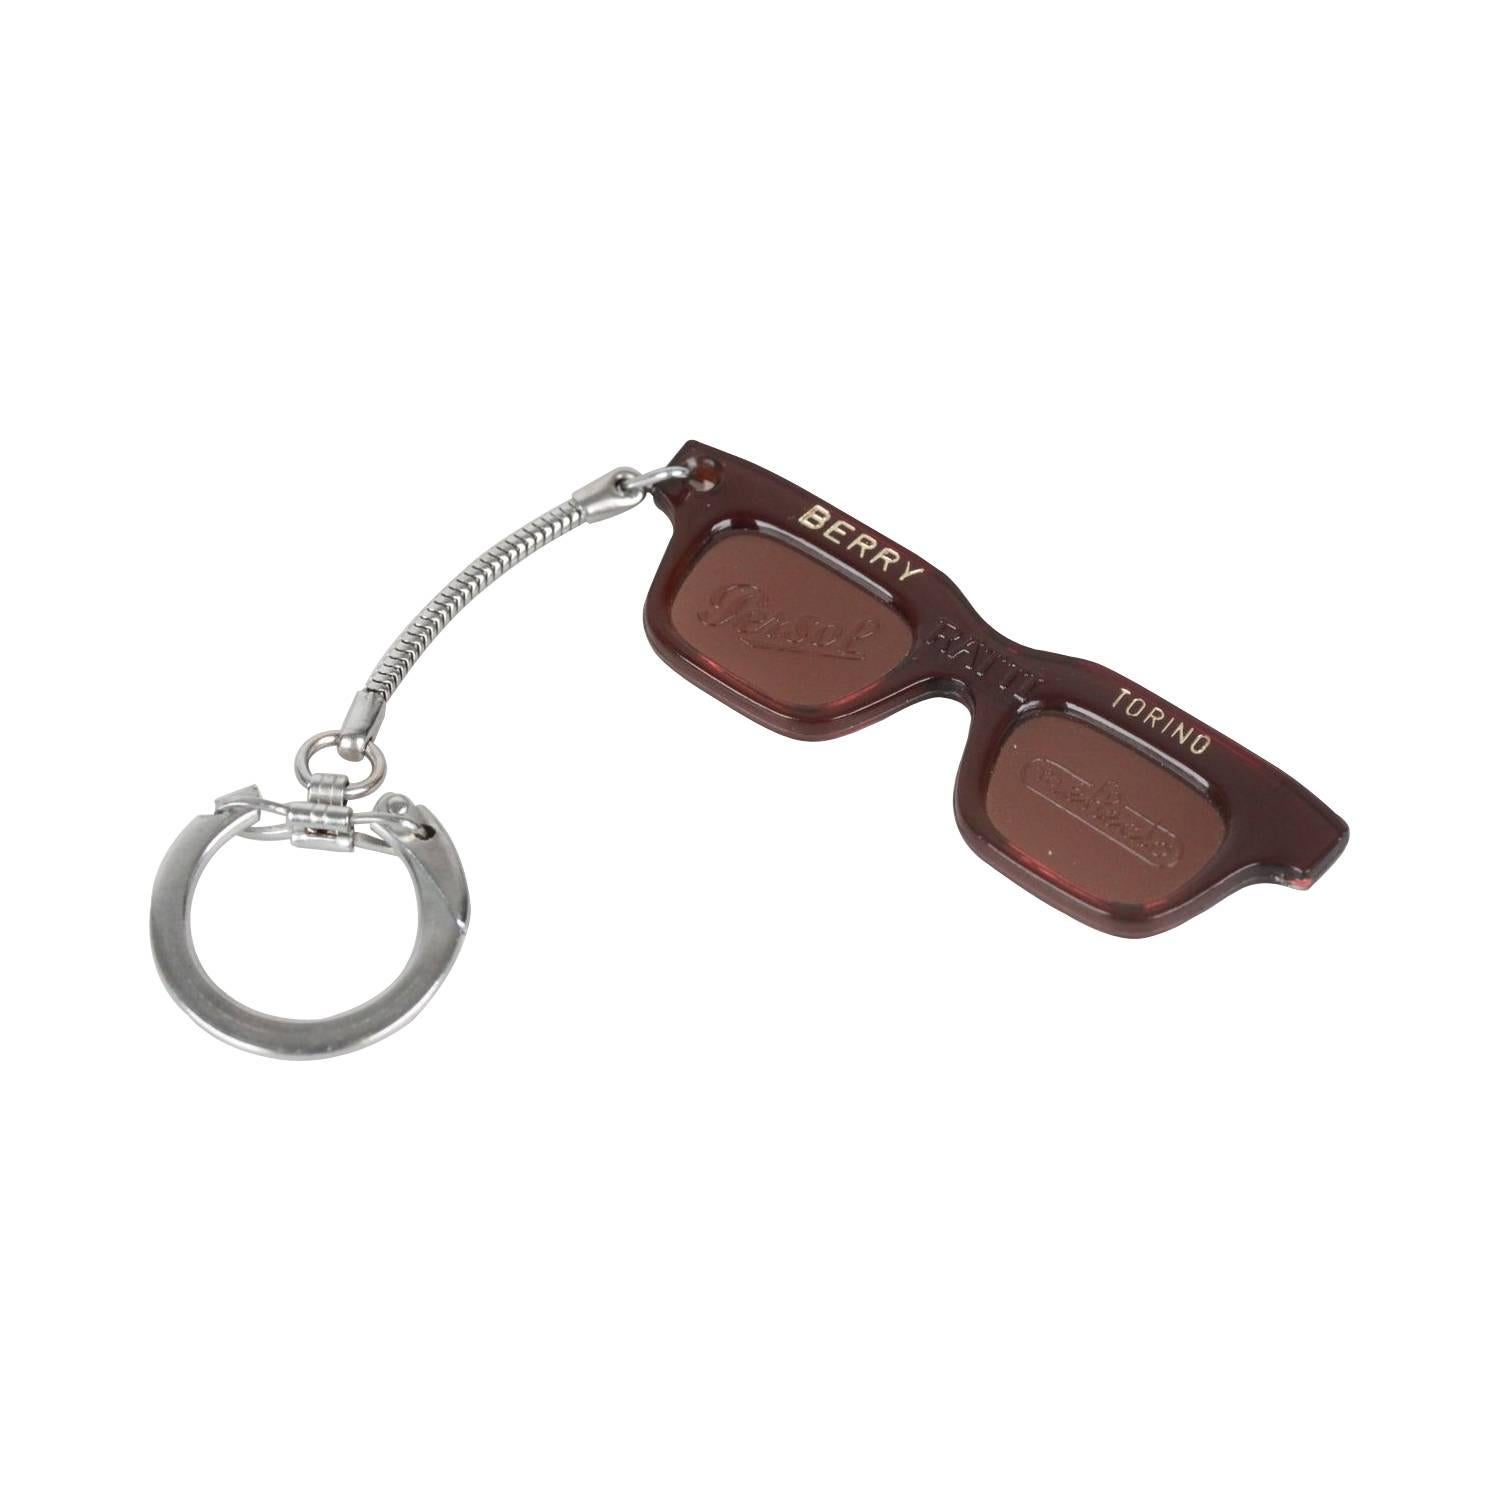 Persol Ratti Berry Torino Vintage Sonnenbrille mit Schlüsselanhänger Charme